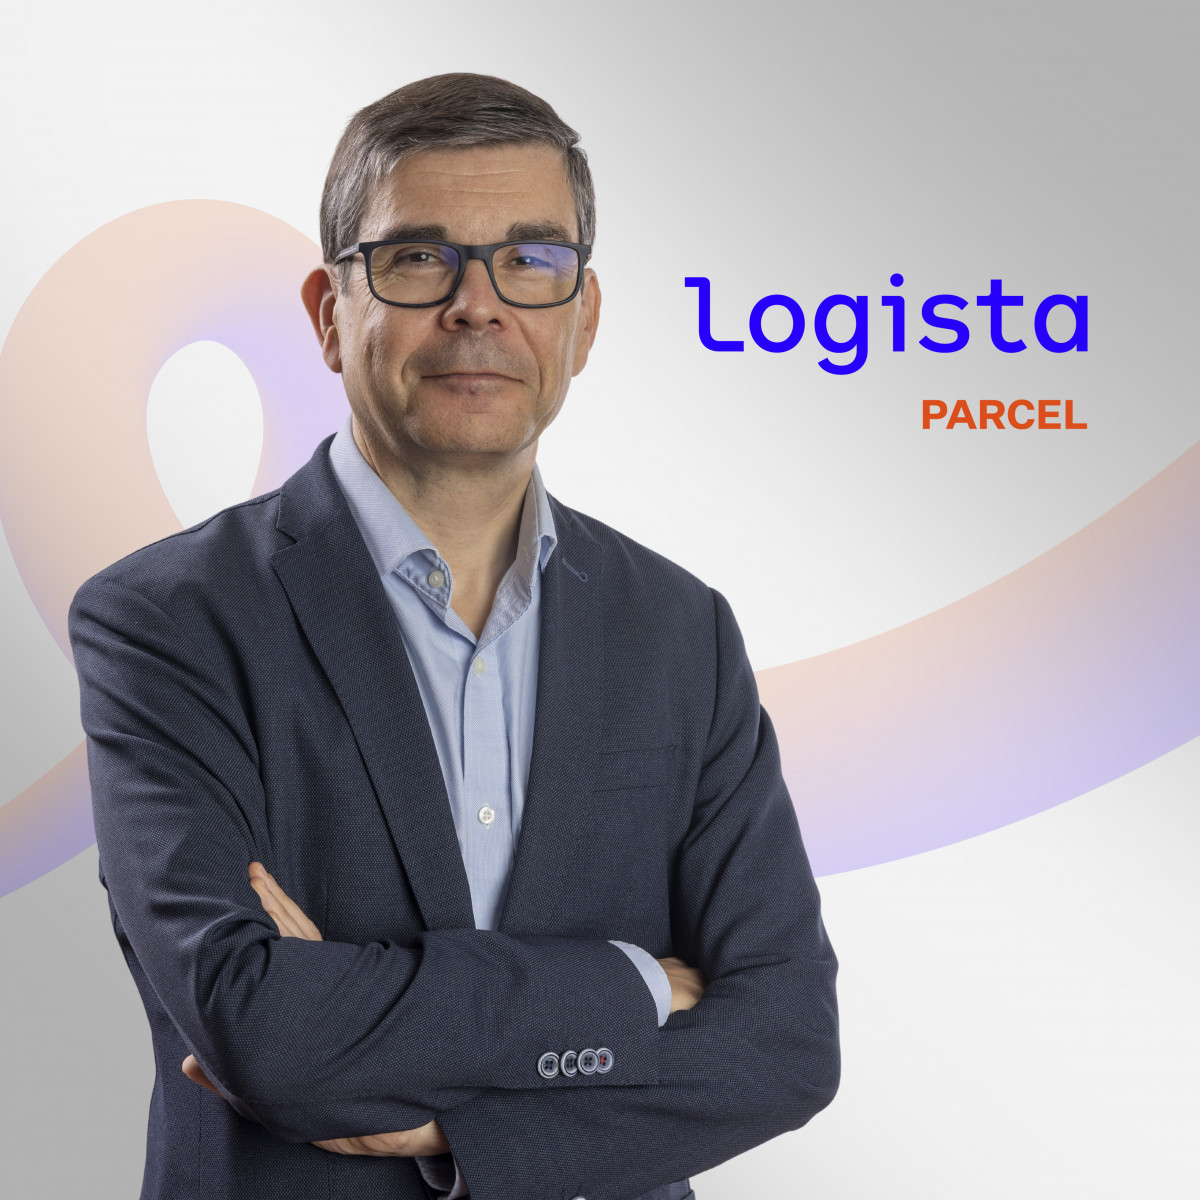 Juan carlos logista parcel